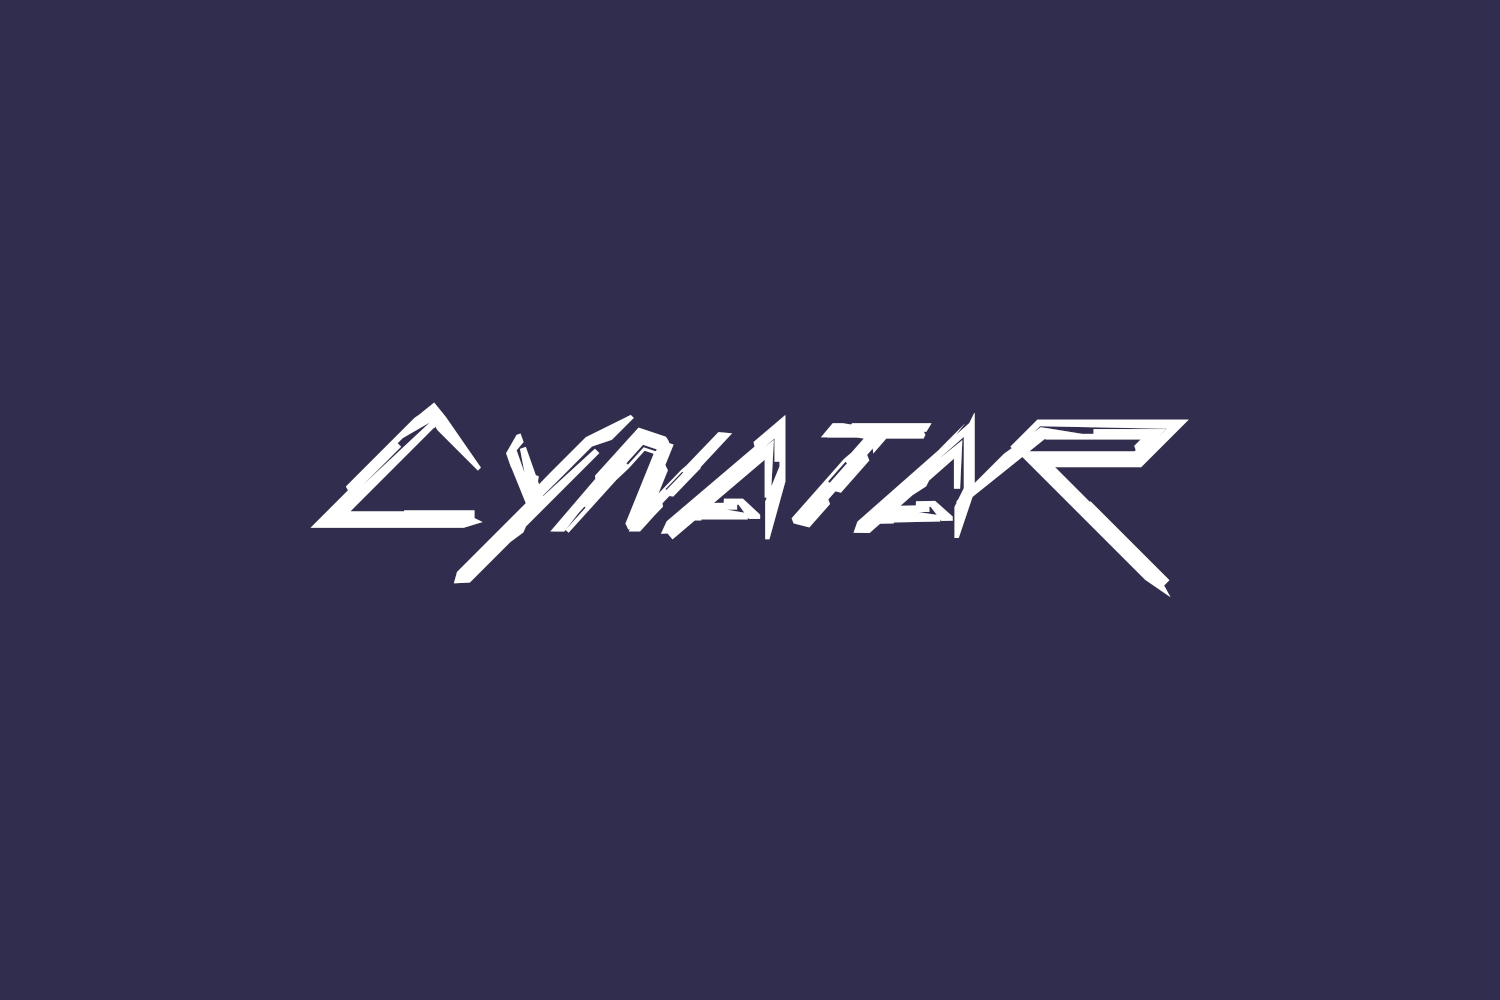 Cynatar Free Font